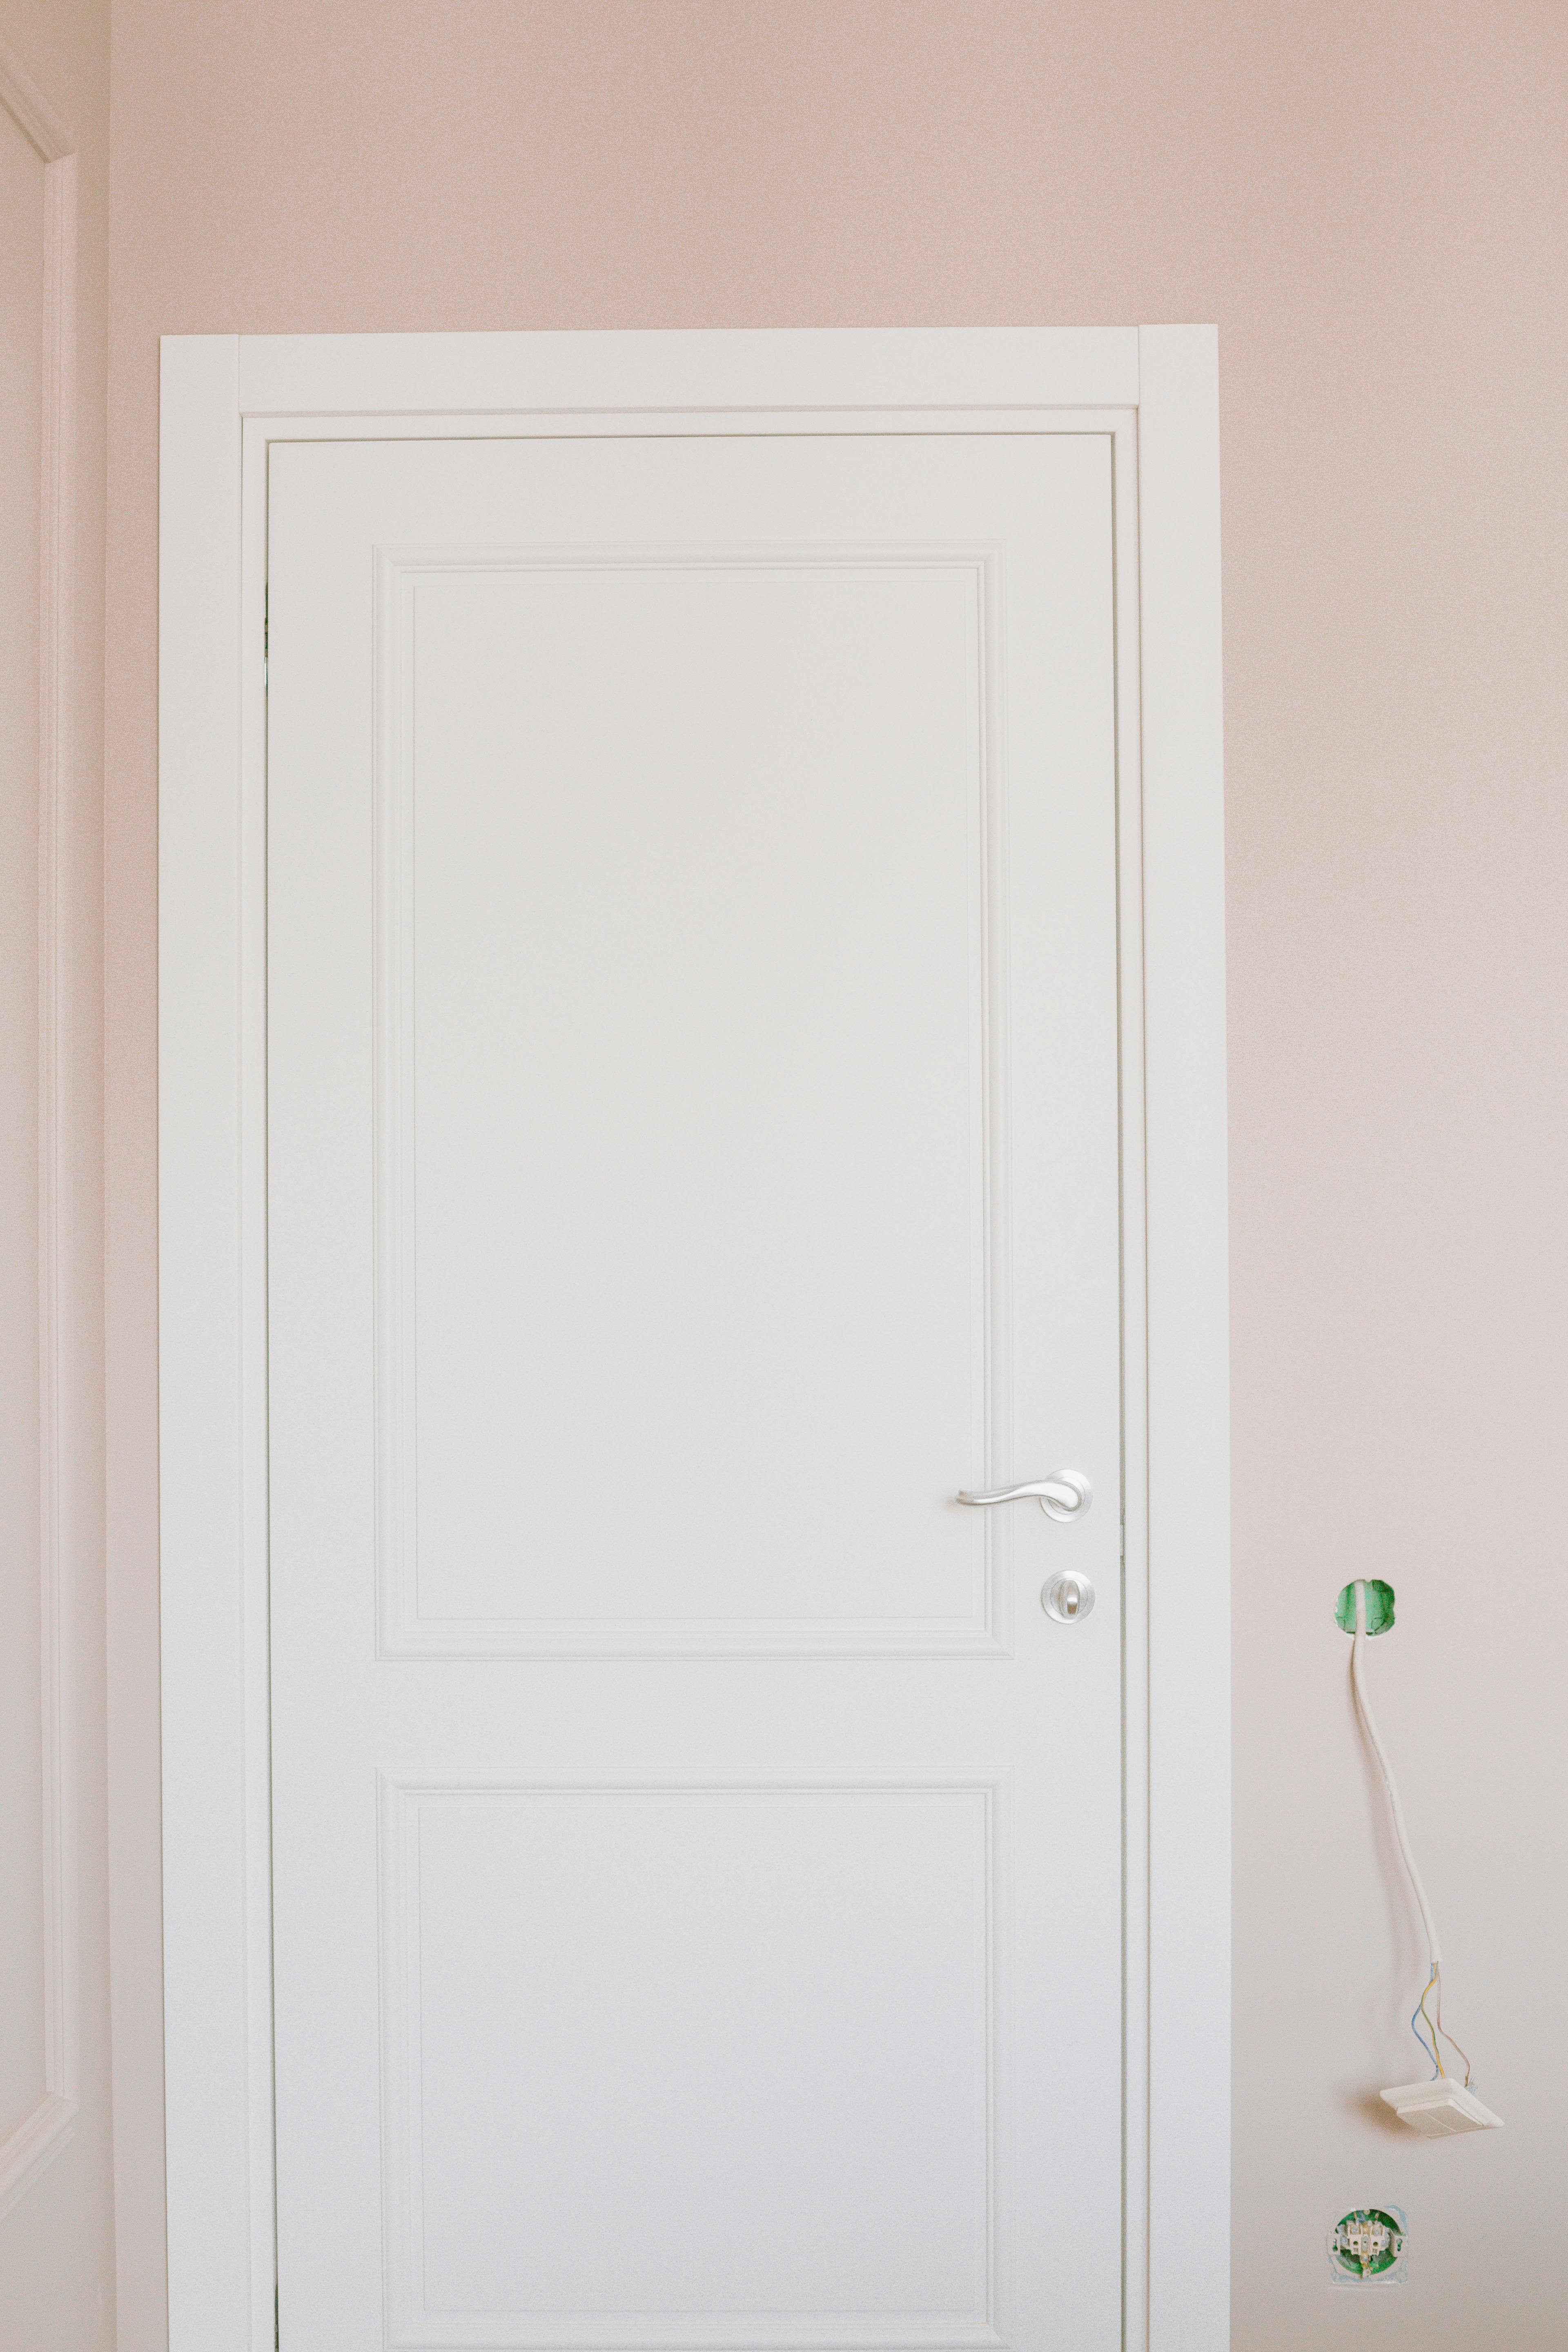 A white door | Source: Pexels